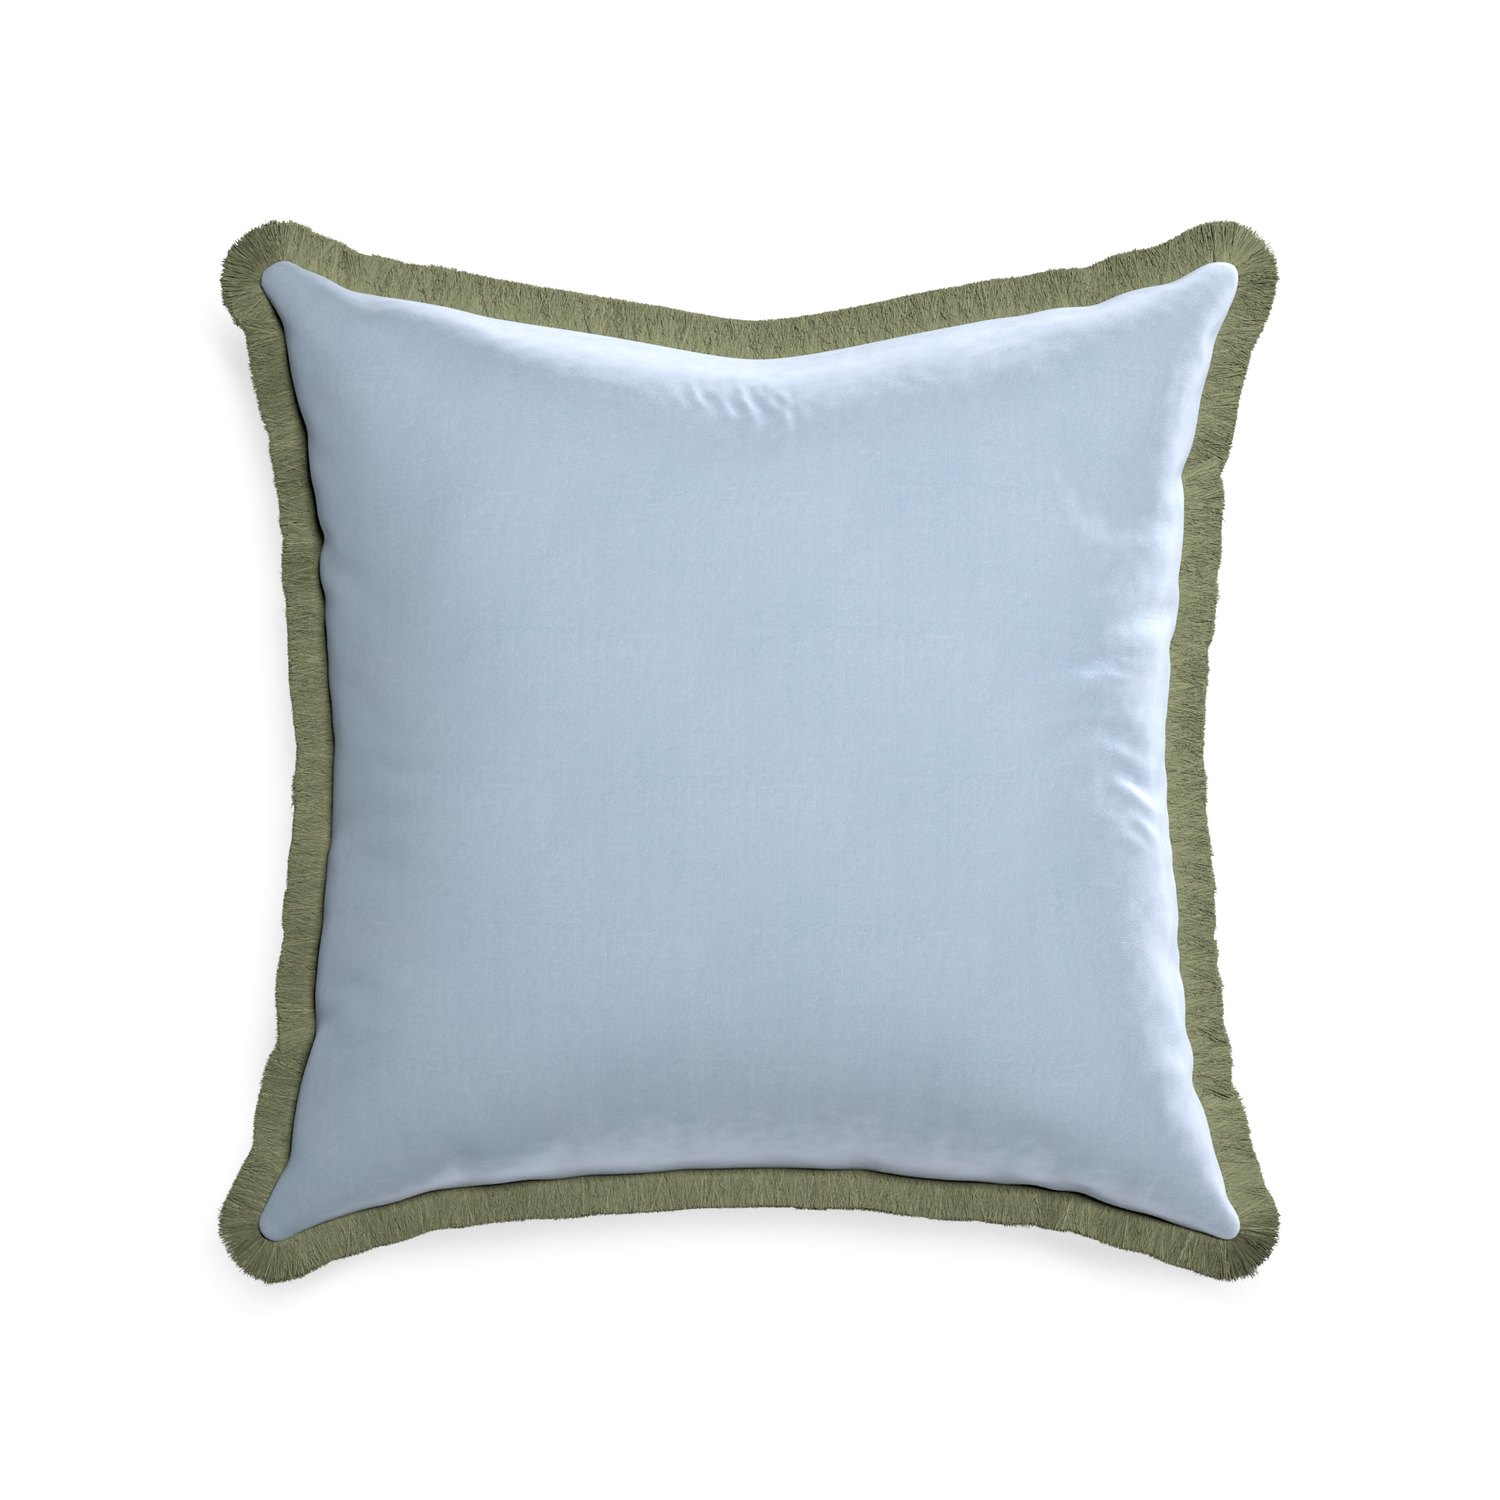 22-square sky velvet custom pillow with sage fringe on white background